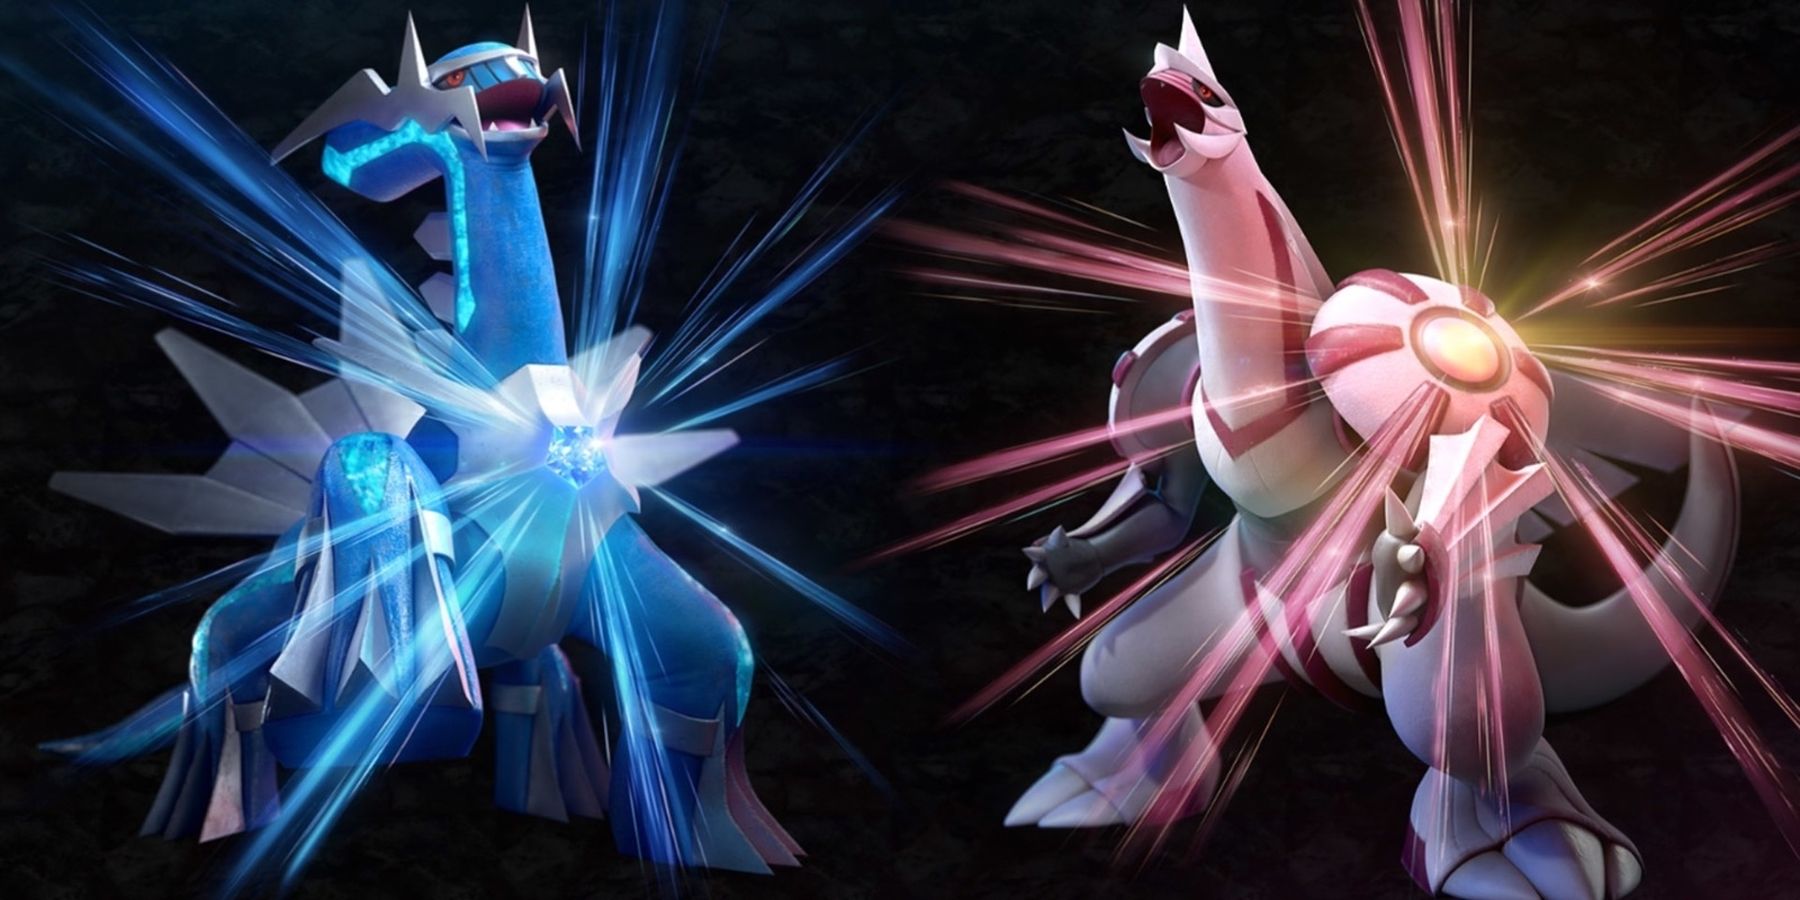 Pokemon Brilliant Diamond and Shining Pearl Updates Add Colosseum Battle Content